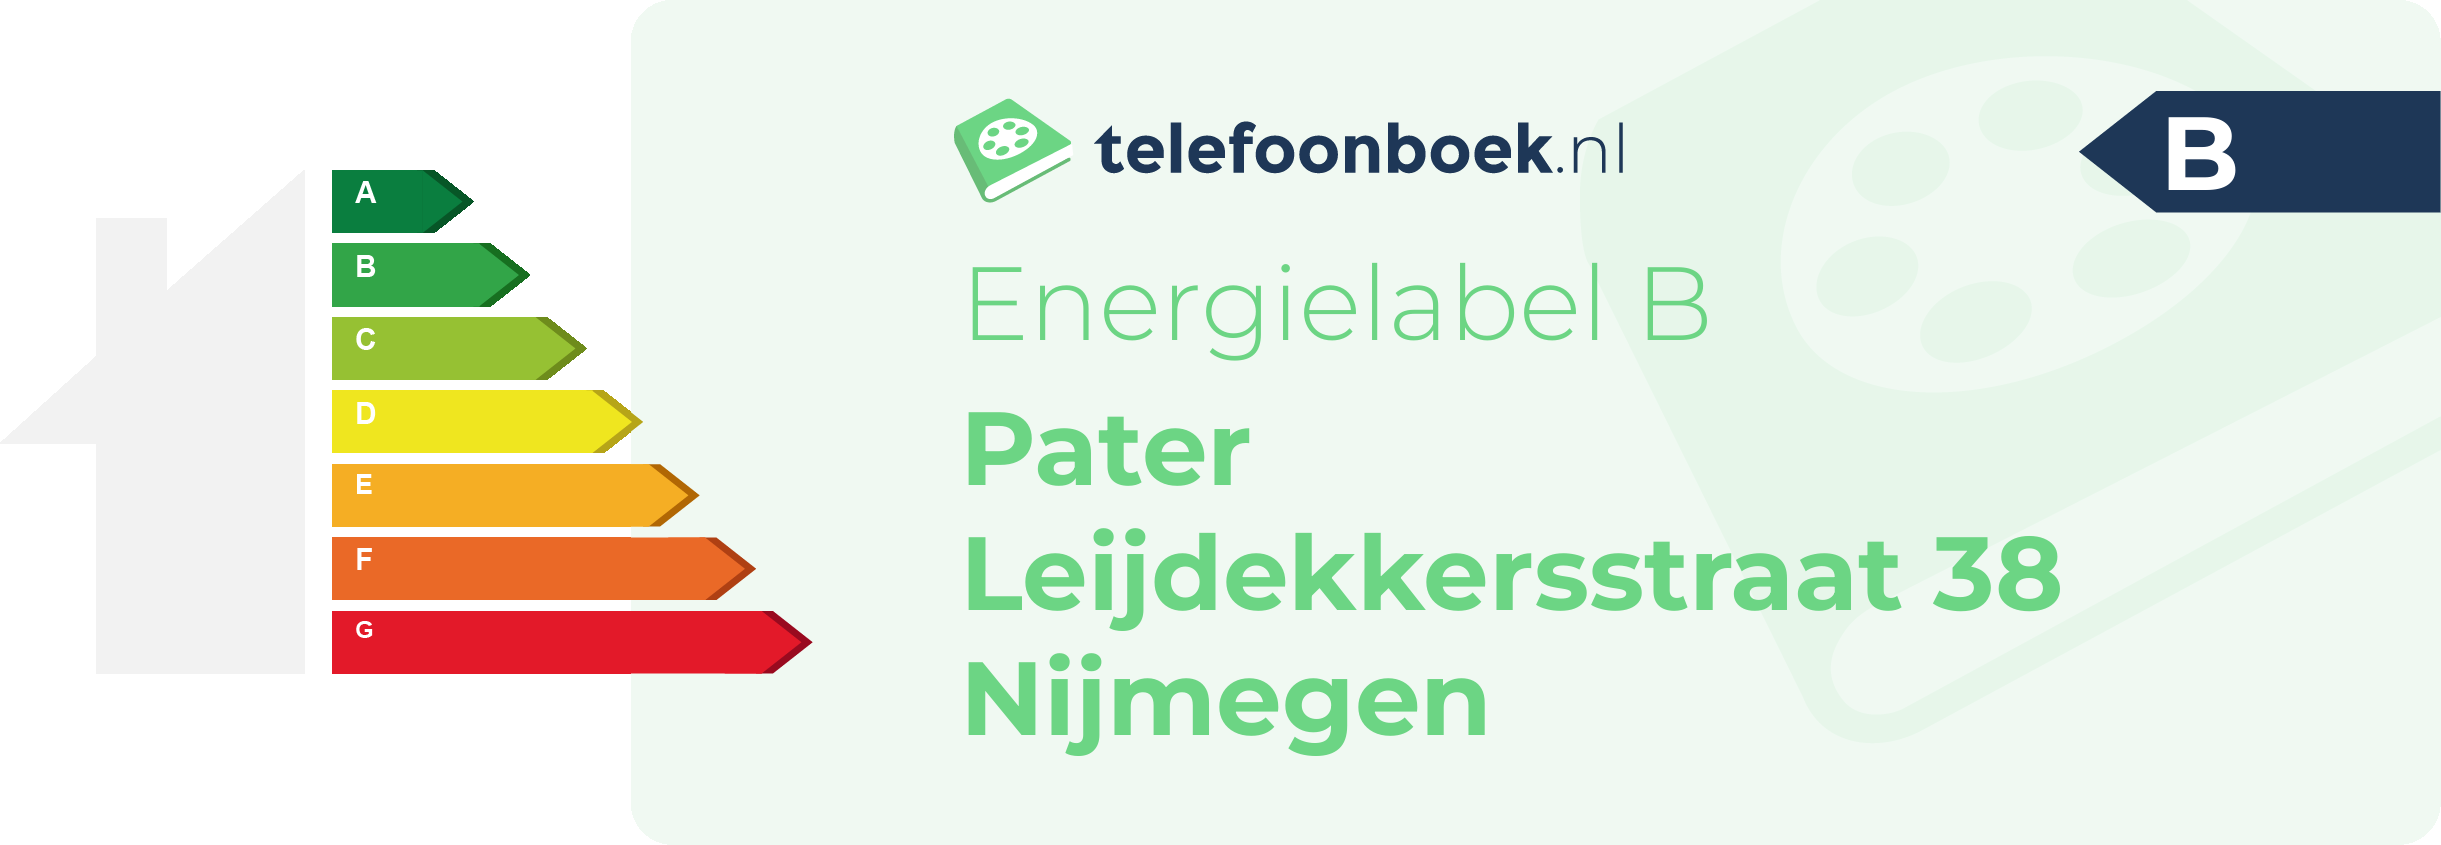 Energielabel Pater Leijdekkersstraat 38 Nijmegen